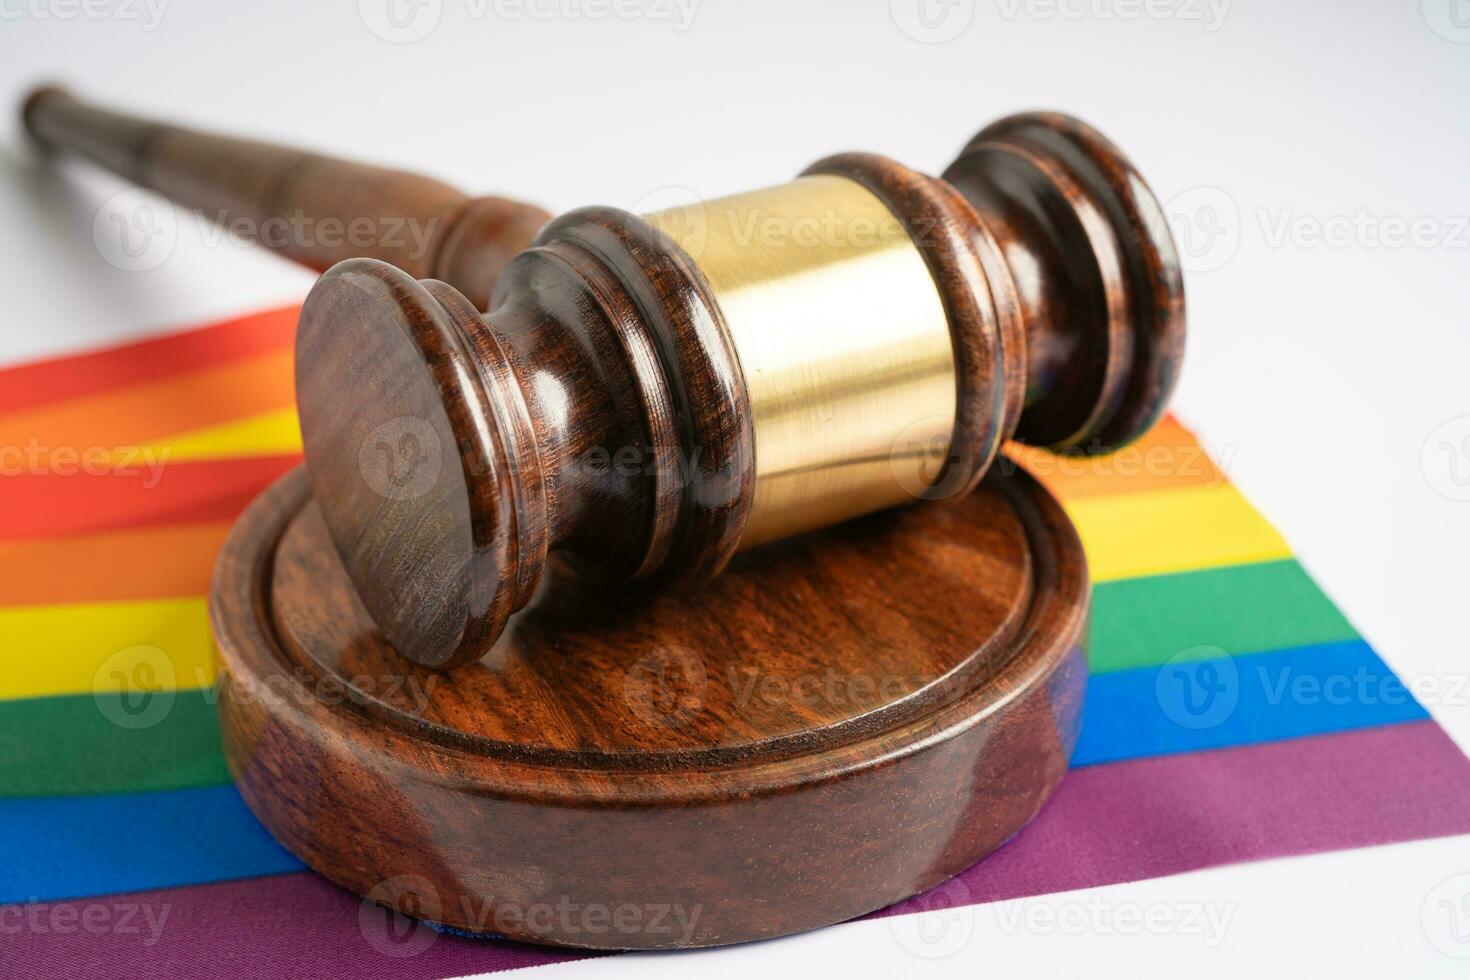 marteau pour juge avocat sur le drapeau arc-en-ciel, symbole du mois de la fierté lgbt célébrant chaque année en juin les droits des homosexuels, lesbiennes, bisexuels, transgenres et humains. photo